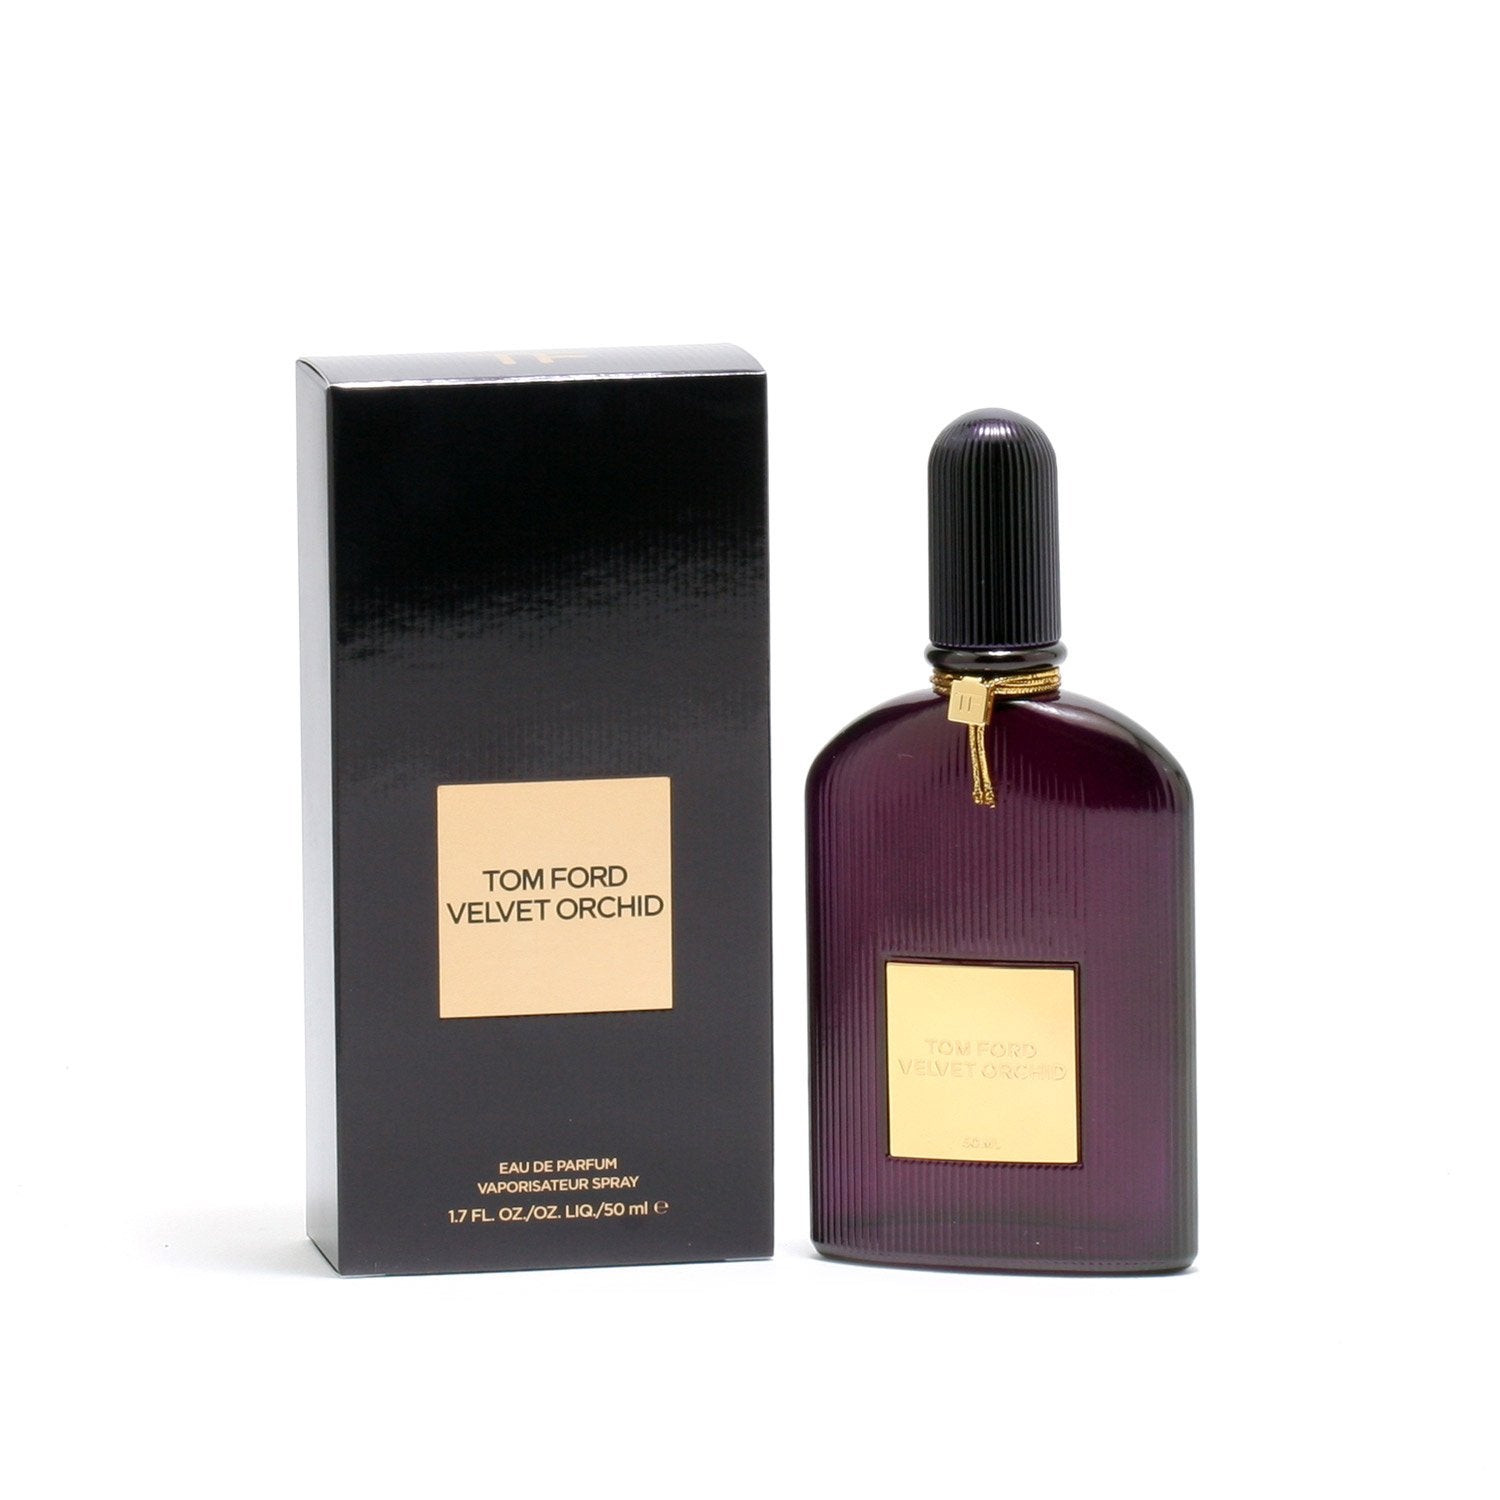 Perfume - TOM FORD VELVET ORCHID FOR WOMEN - EAU DE PARFUM SPRAY